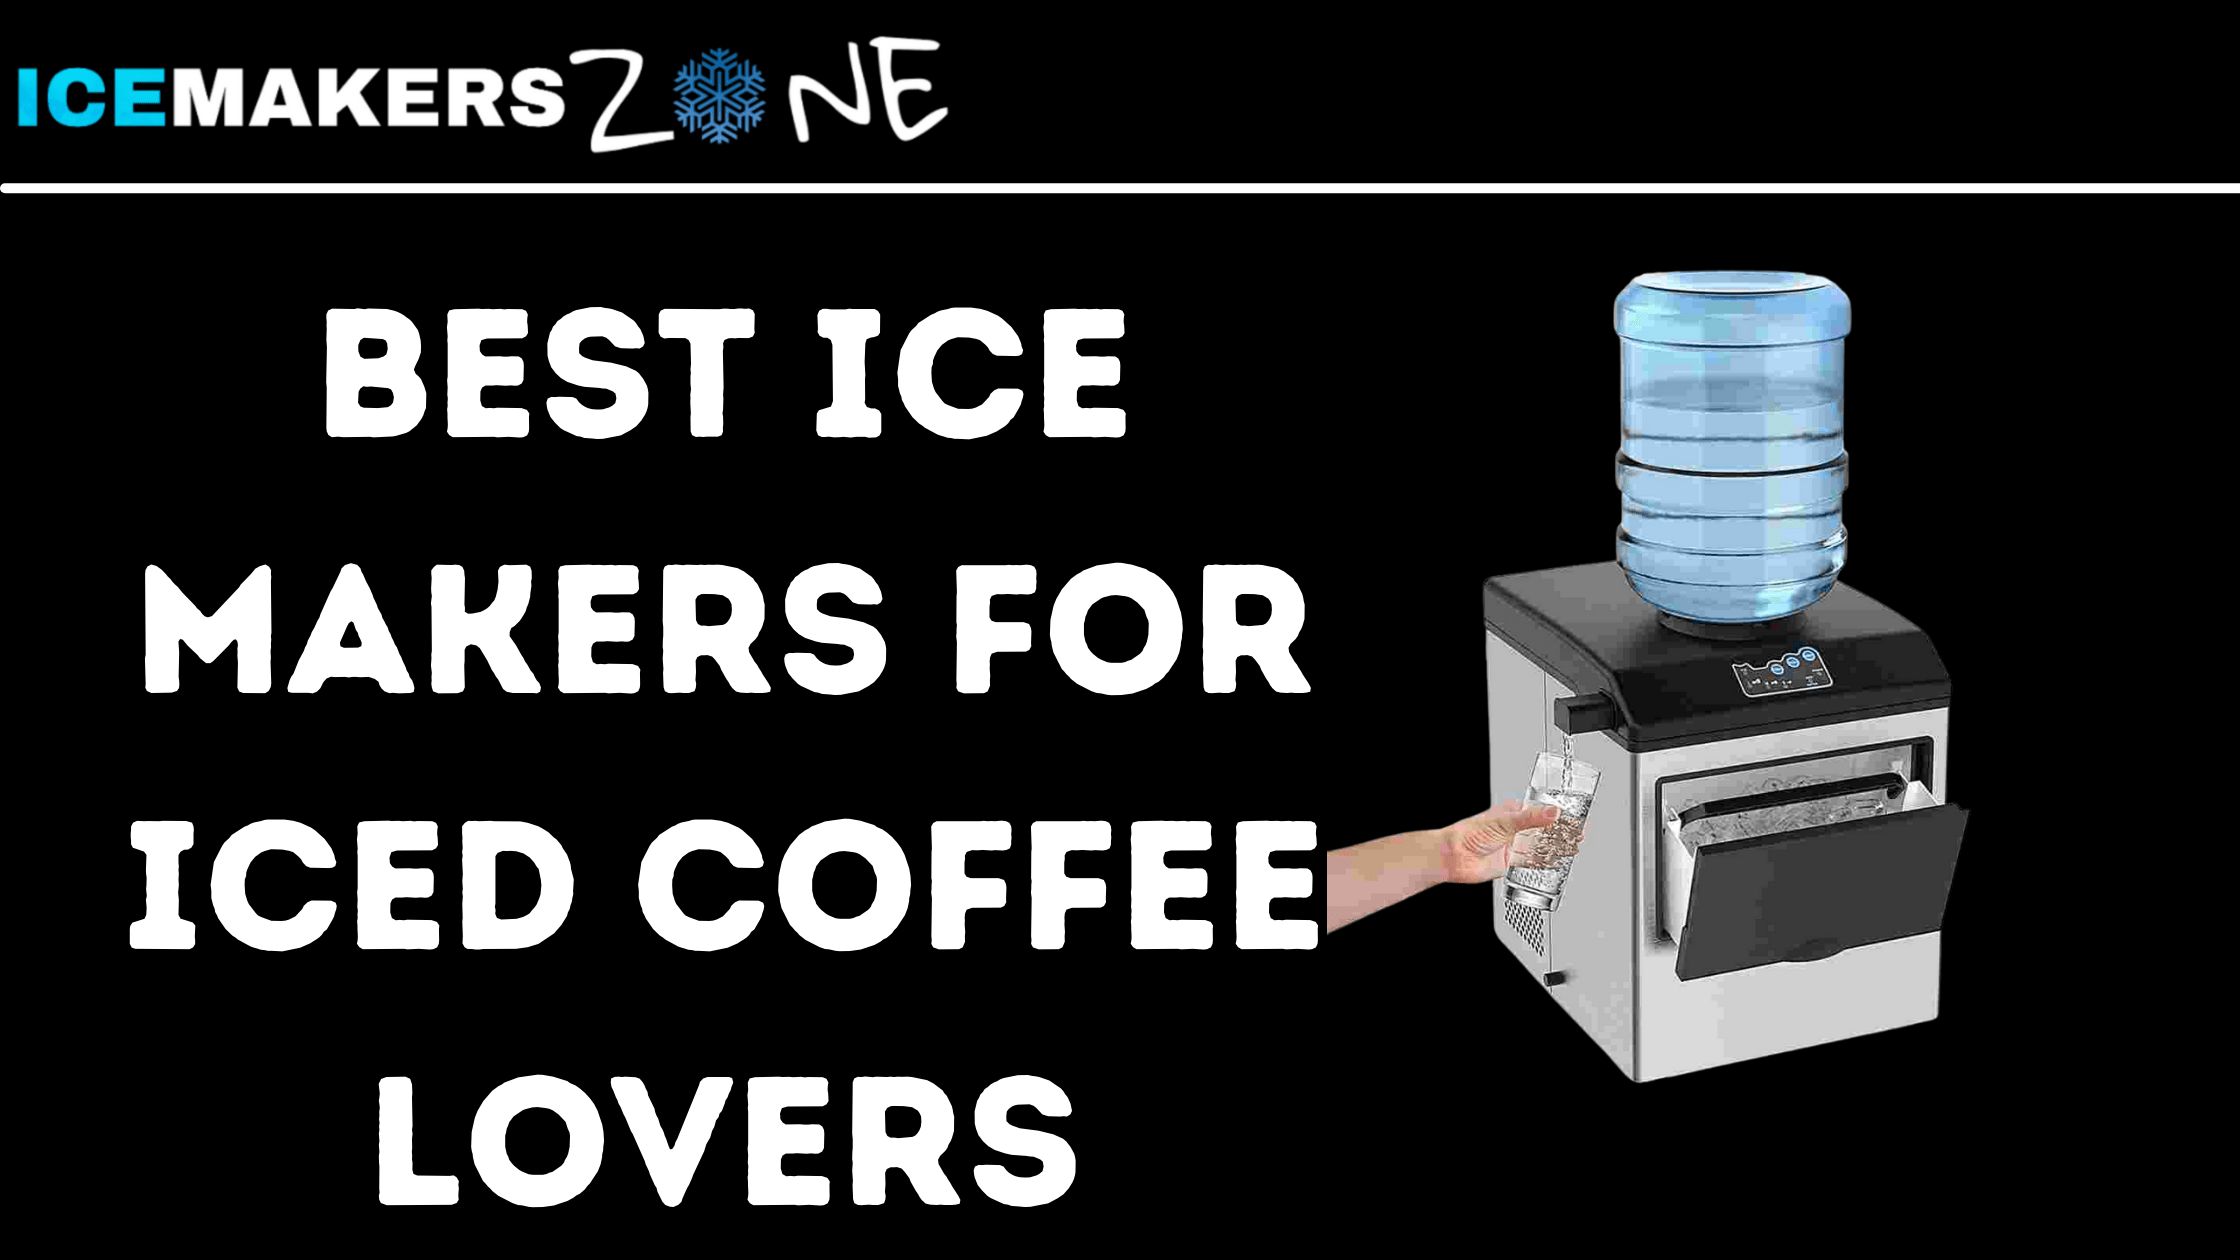 Iced-Coffee-Lovers